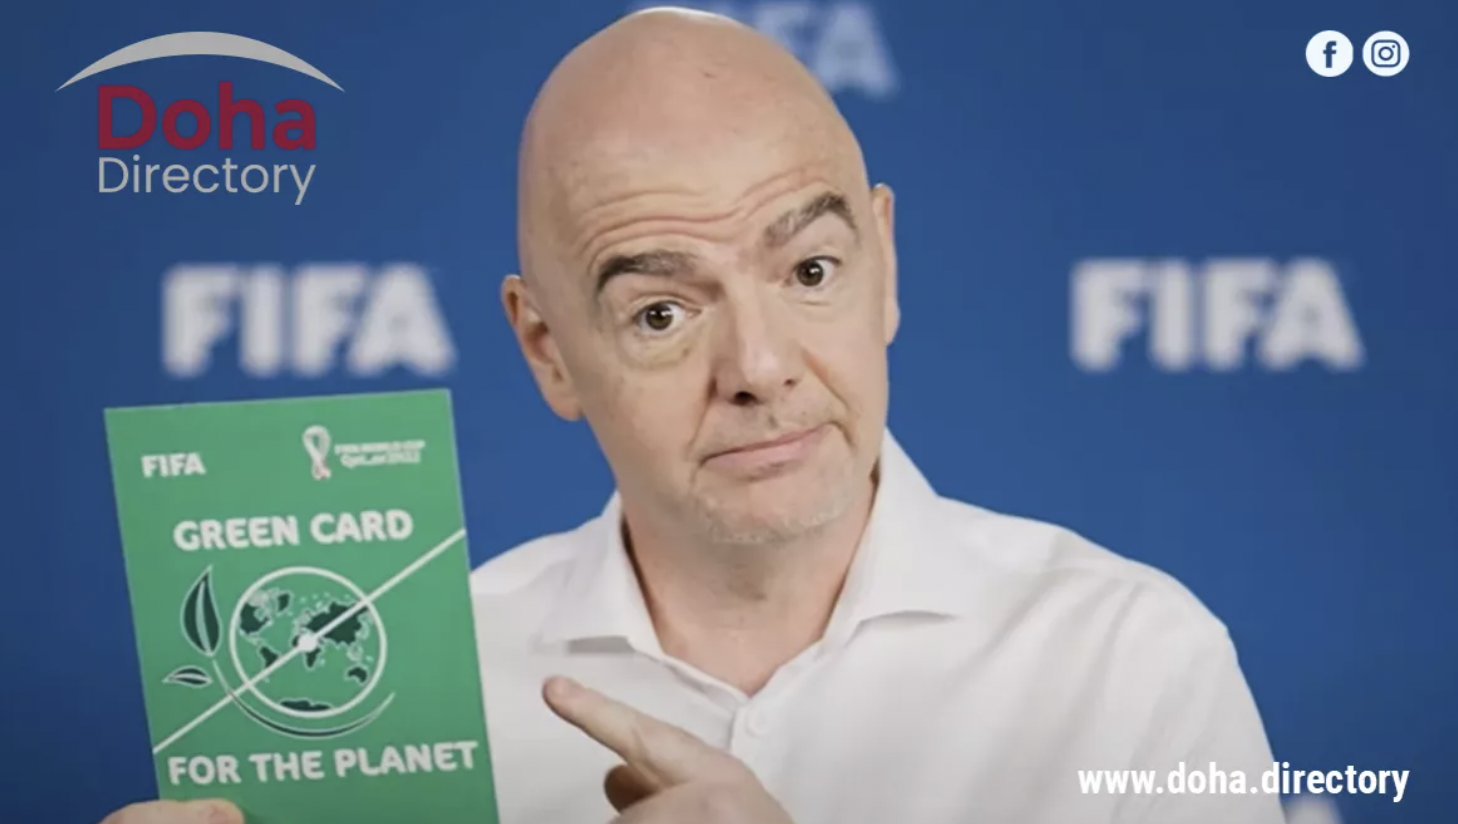 ФИФА обвиняется в «зеленом отмывании» после того, как требования Катара о нулевом выбросе углерода в 2022 году были отклонены